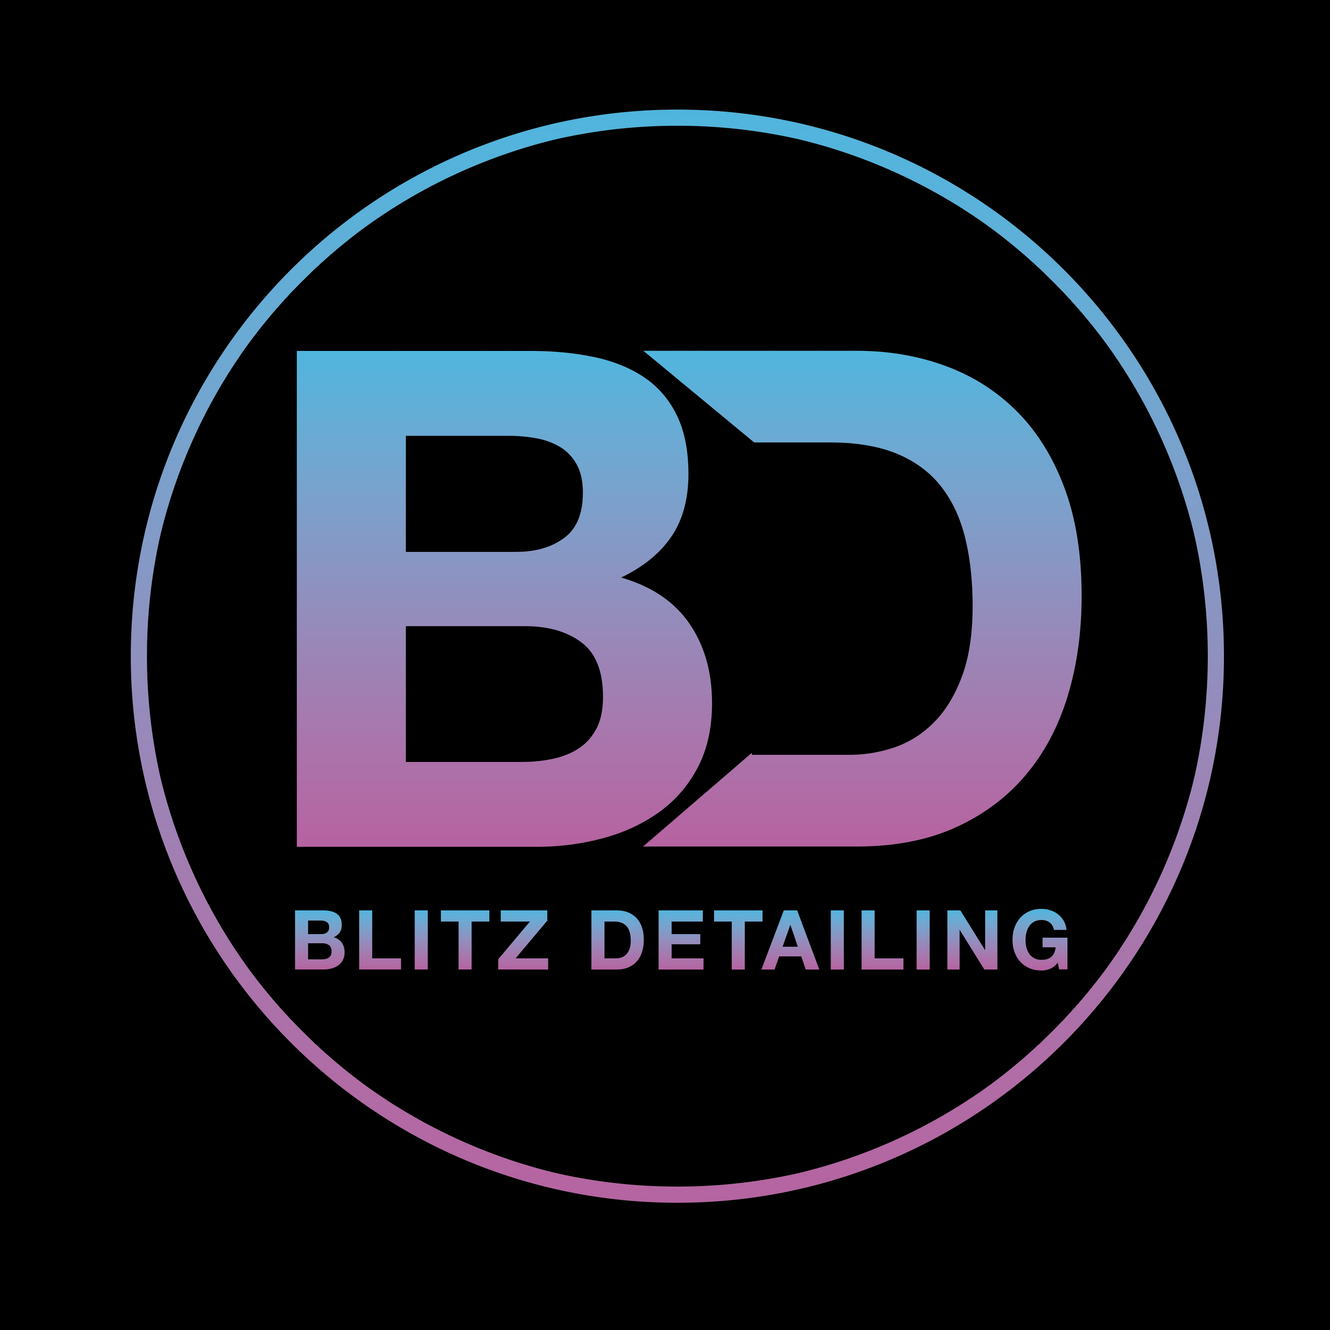 www.blitzdetailinguk.com